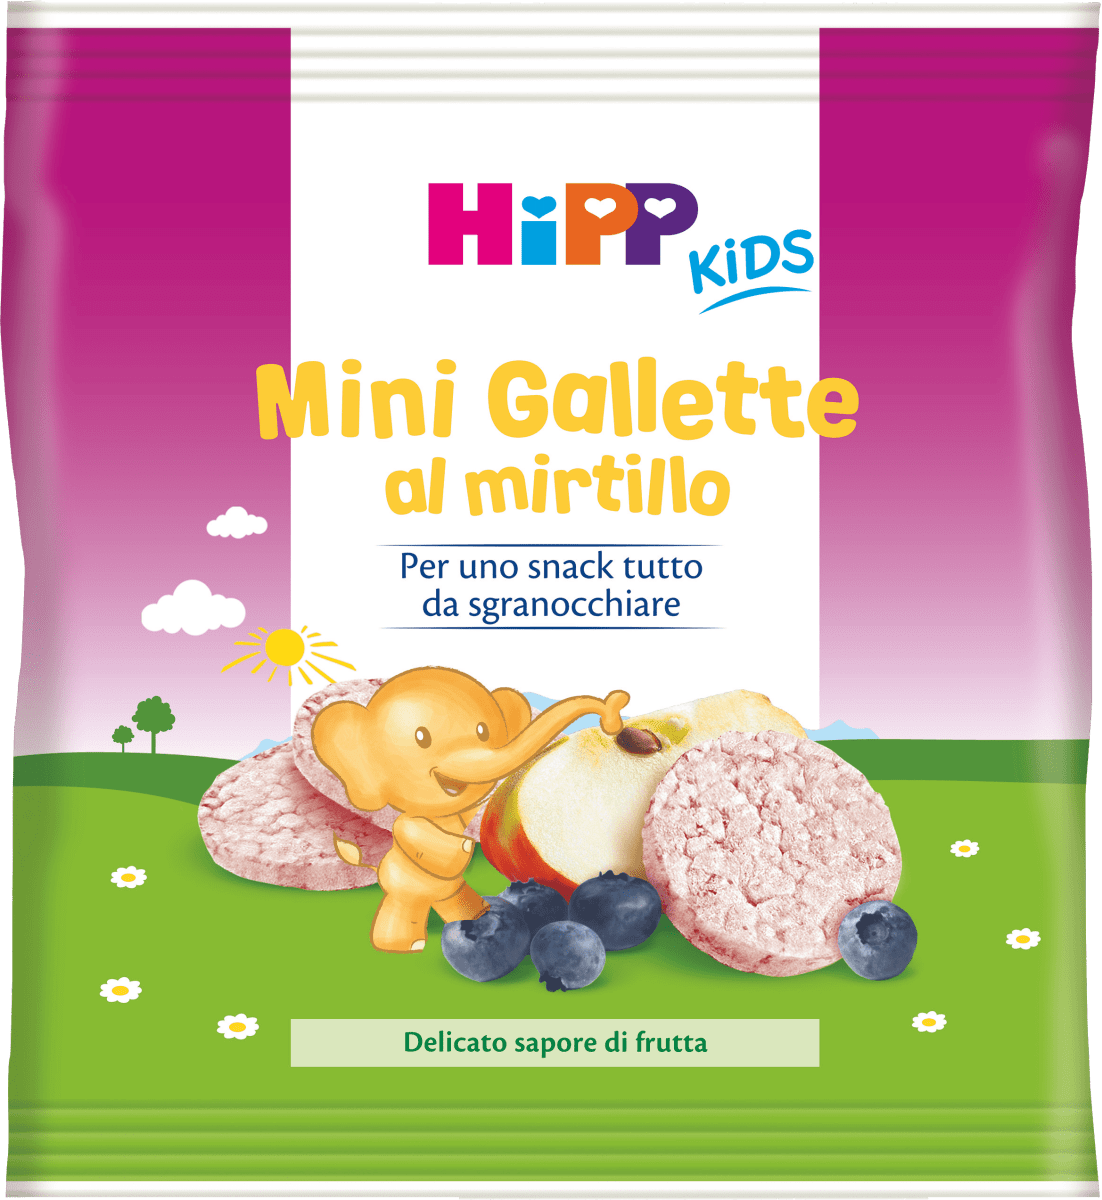 HIPP Mini gallette al mirtillo, 30 g Acquisti online sempre convenienti